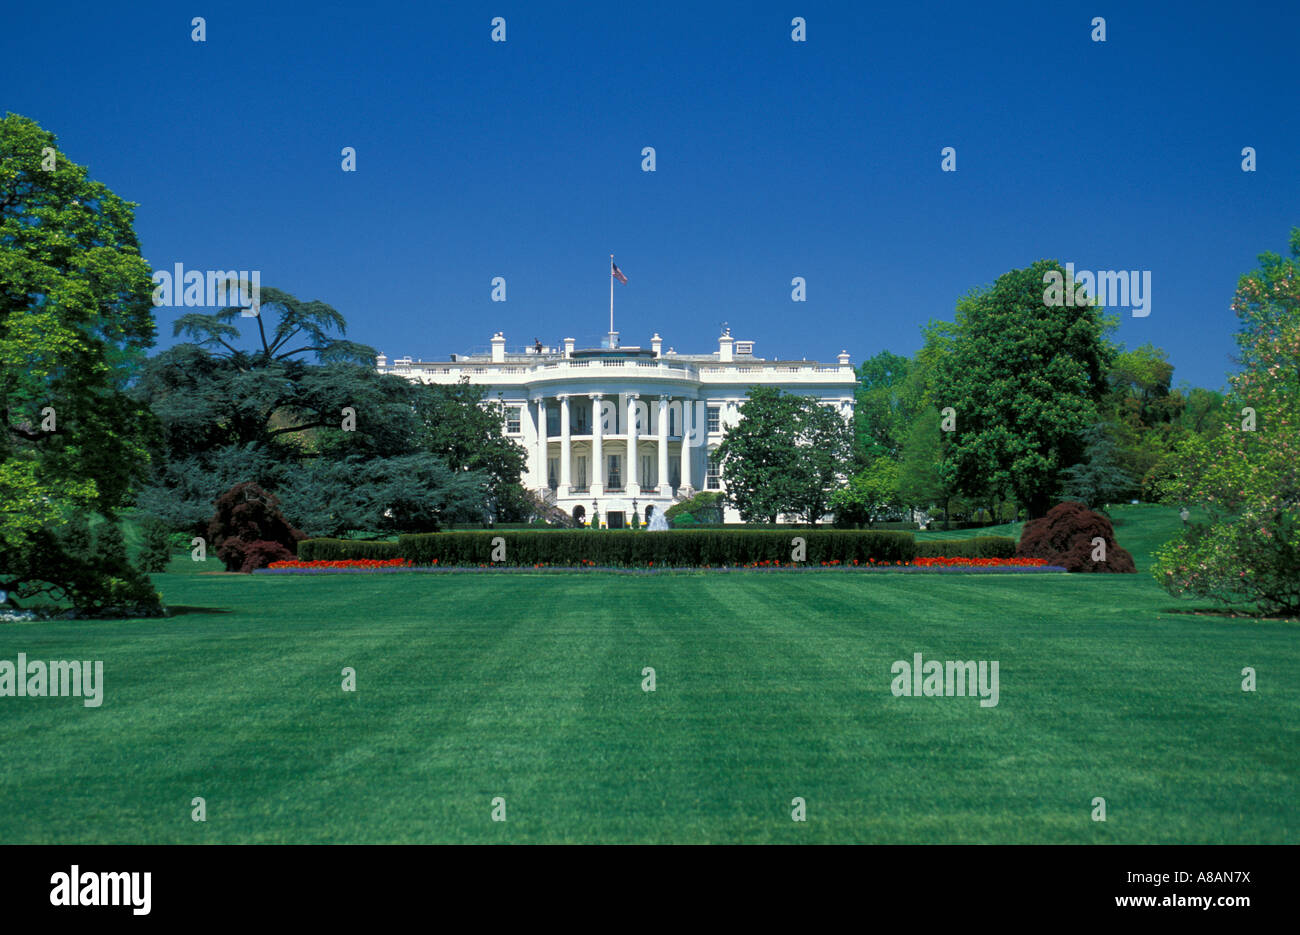 USA_Washington_DC_lush_green_lawn_carpet